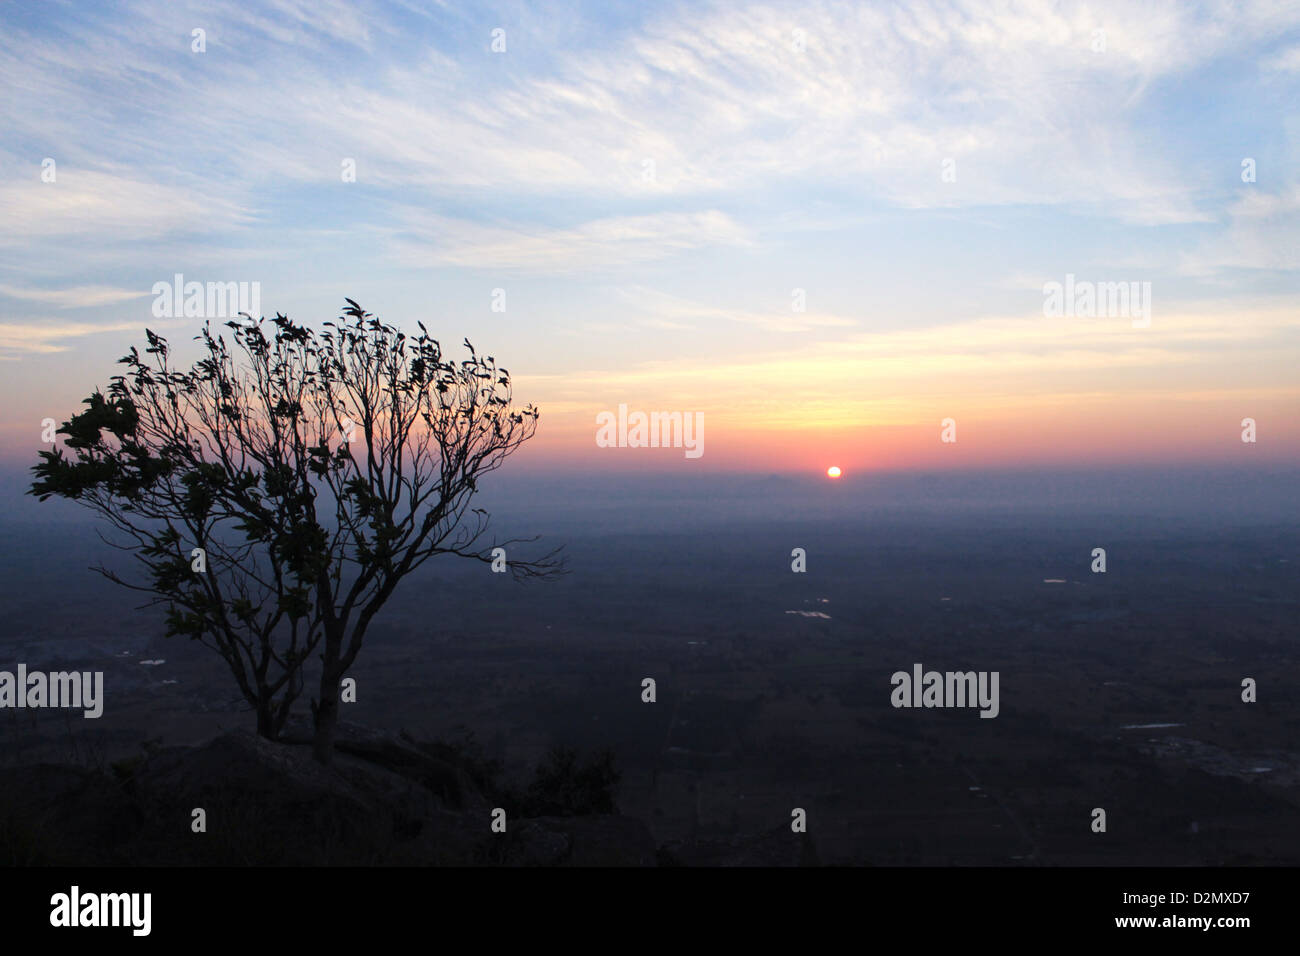 A Misty Sunrise at Kaurav Kunta Hills Stock Photo